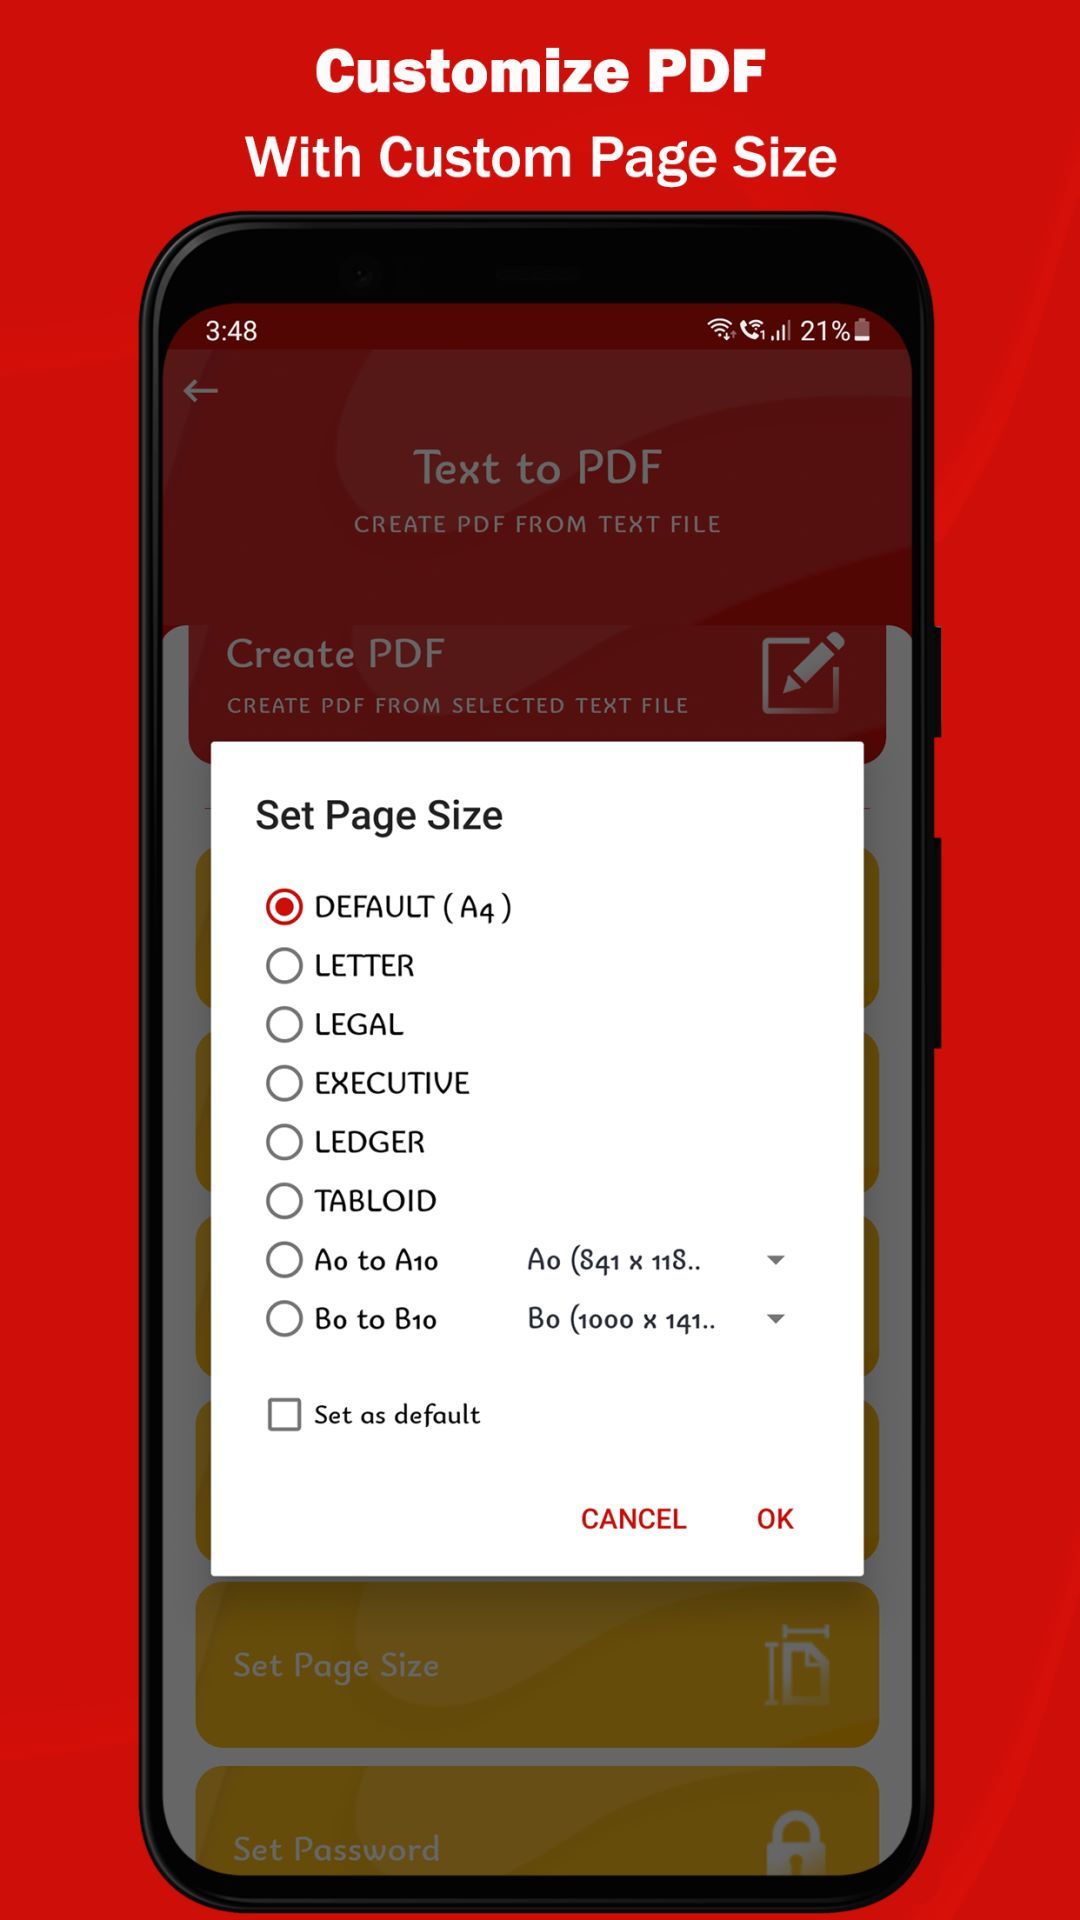 PDF Editor - PDF Reader & Viewer